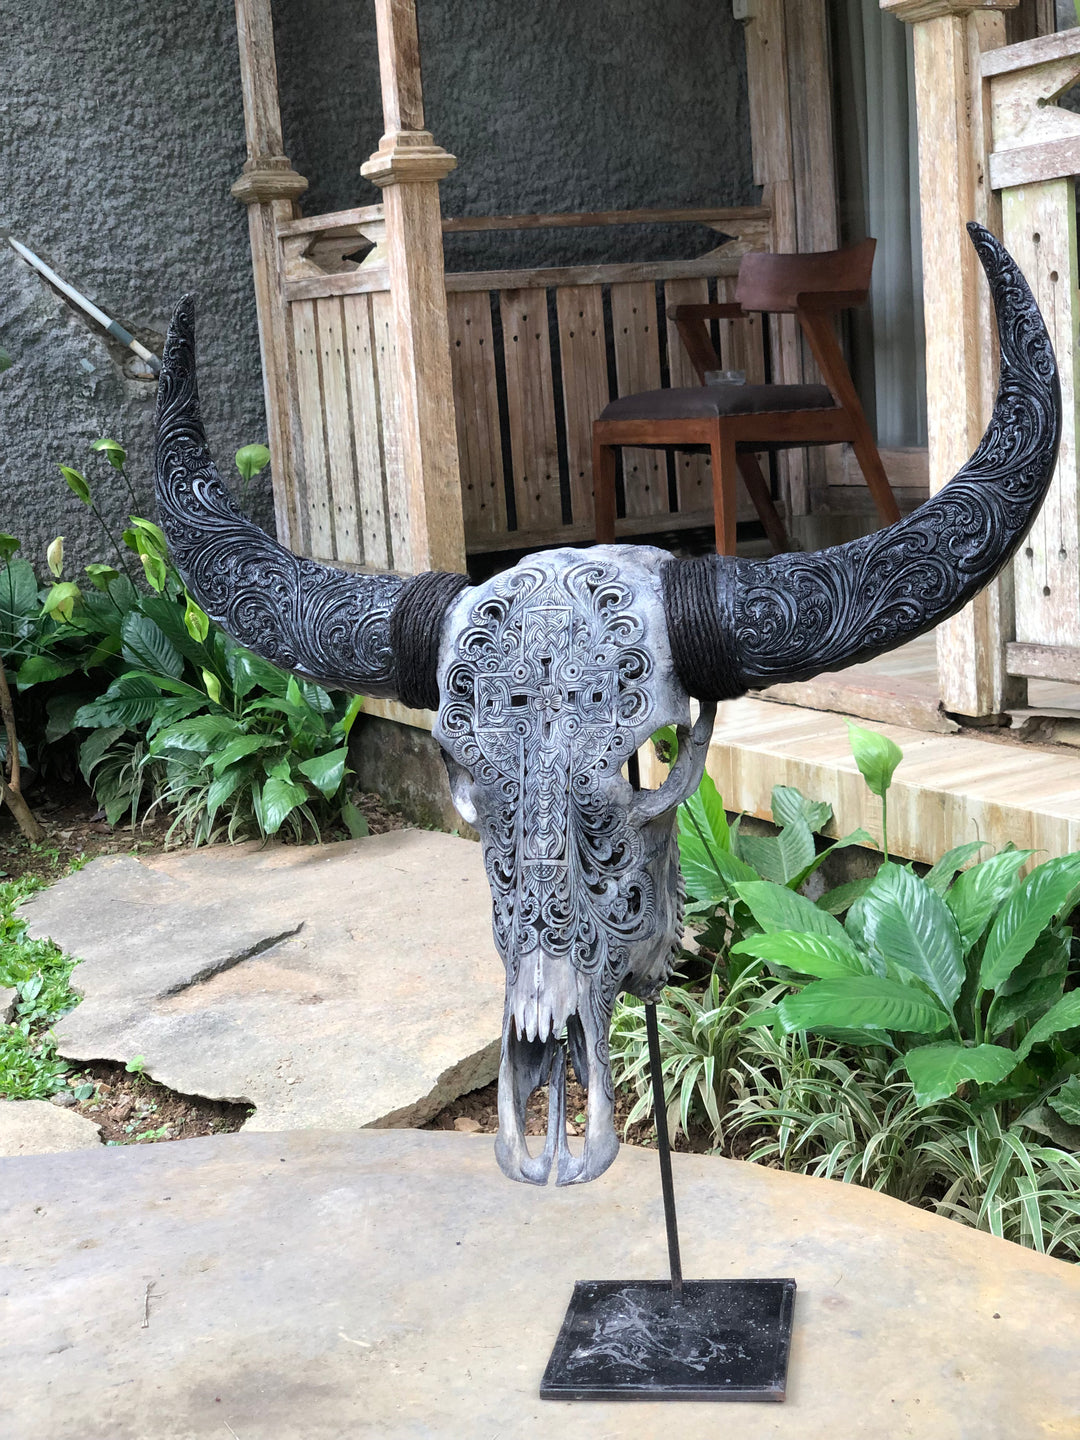 Sacred Cross Carved Bull Skull